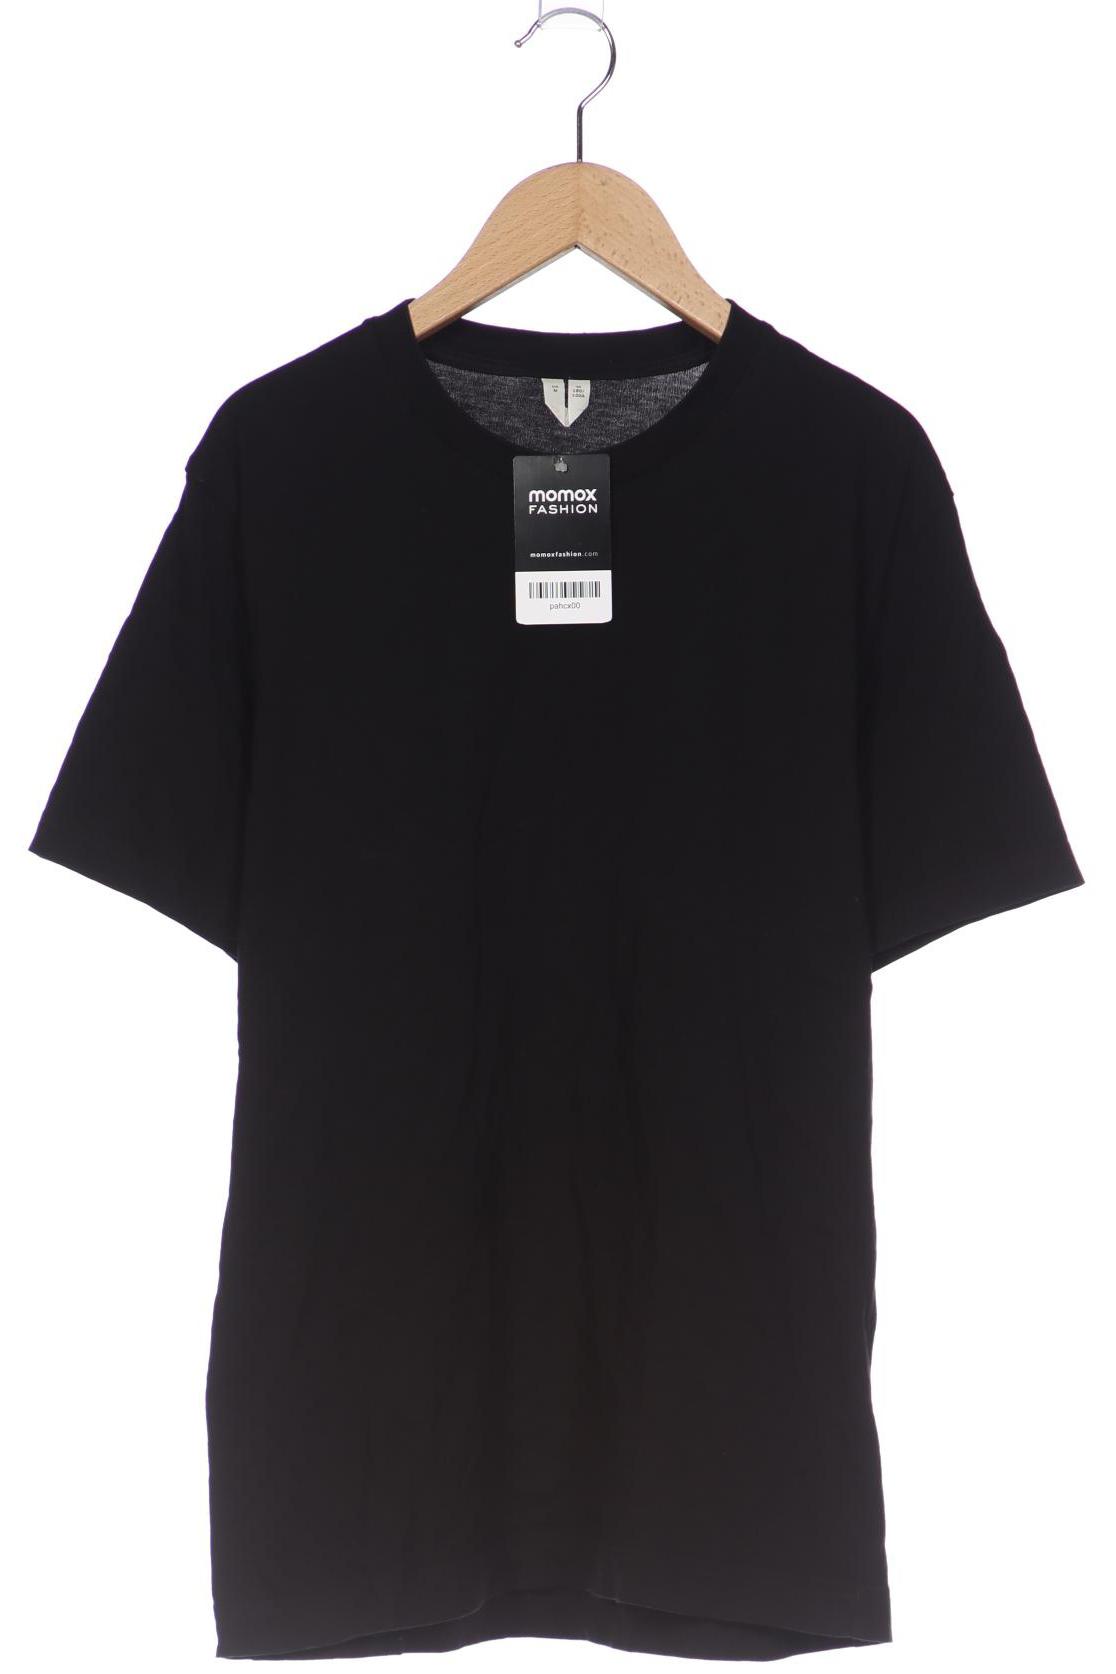 Arket Herren T-Shirt, schwarz, Gr. 48 von Arket